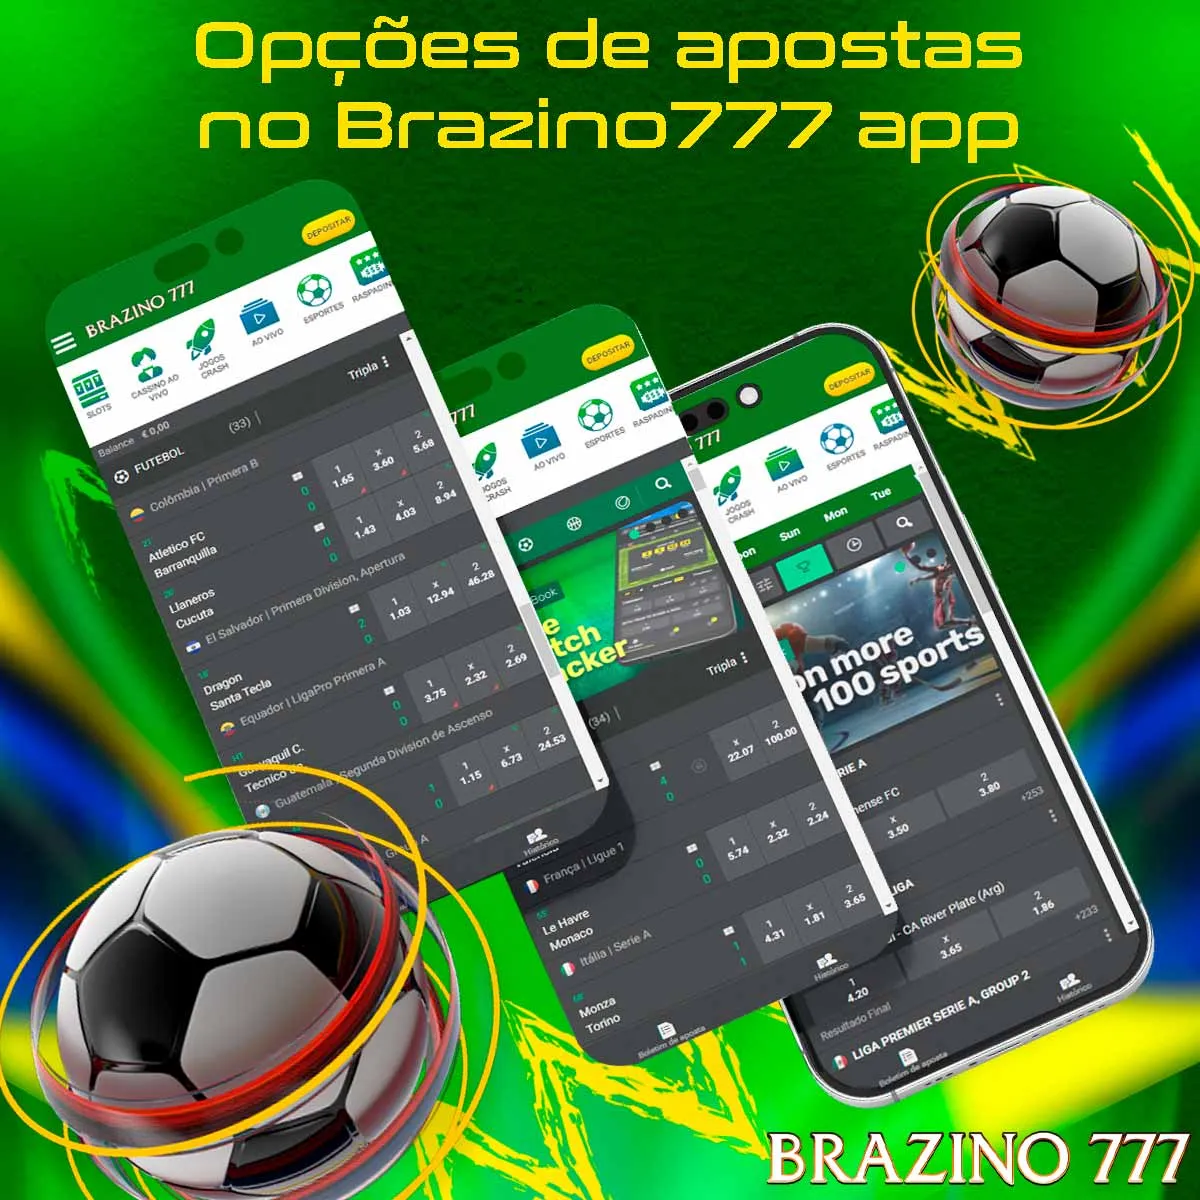 Uma visão geral das opções de apostas no aplicativo Brazino777